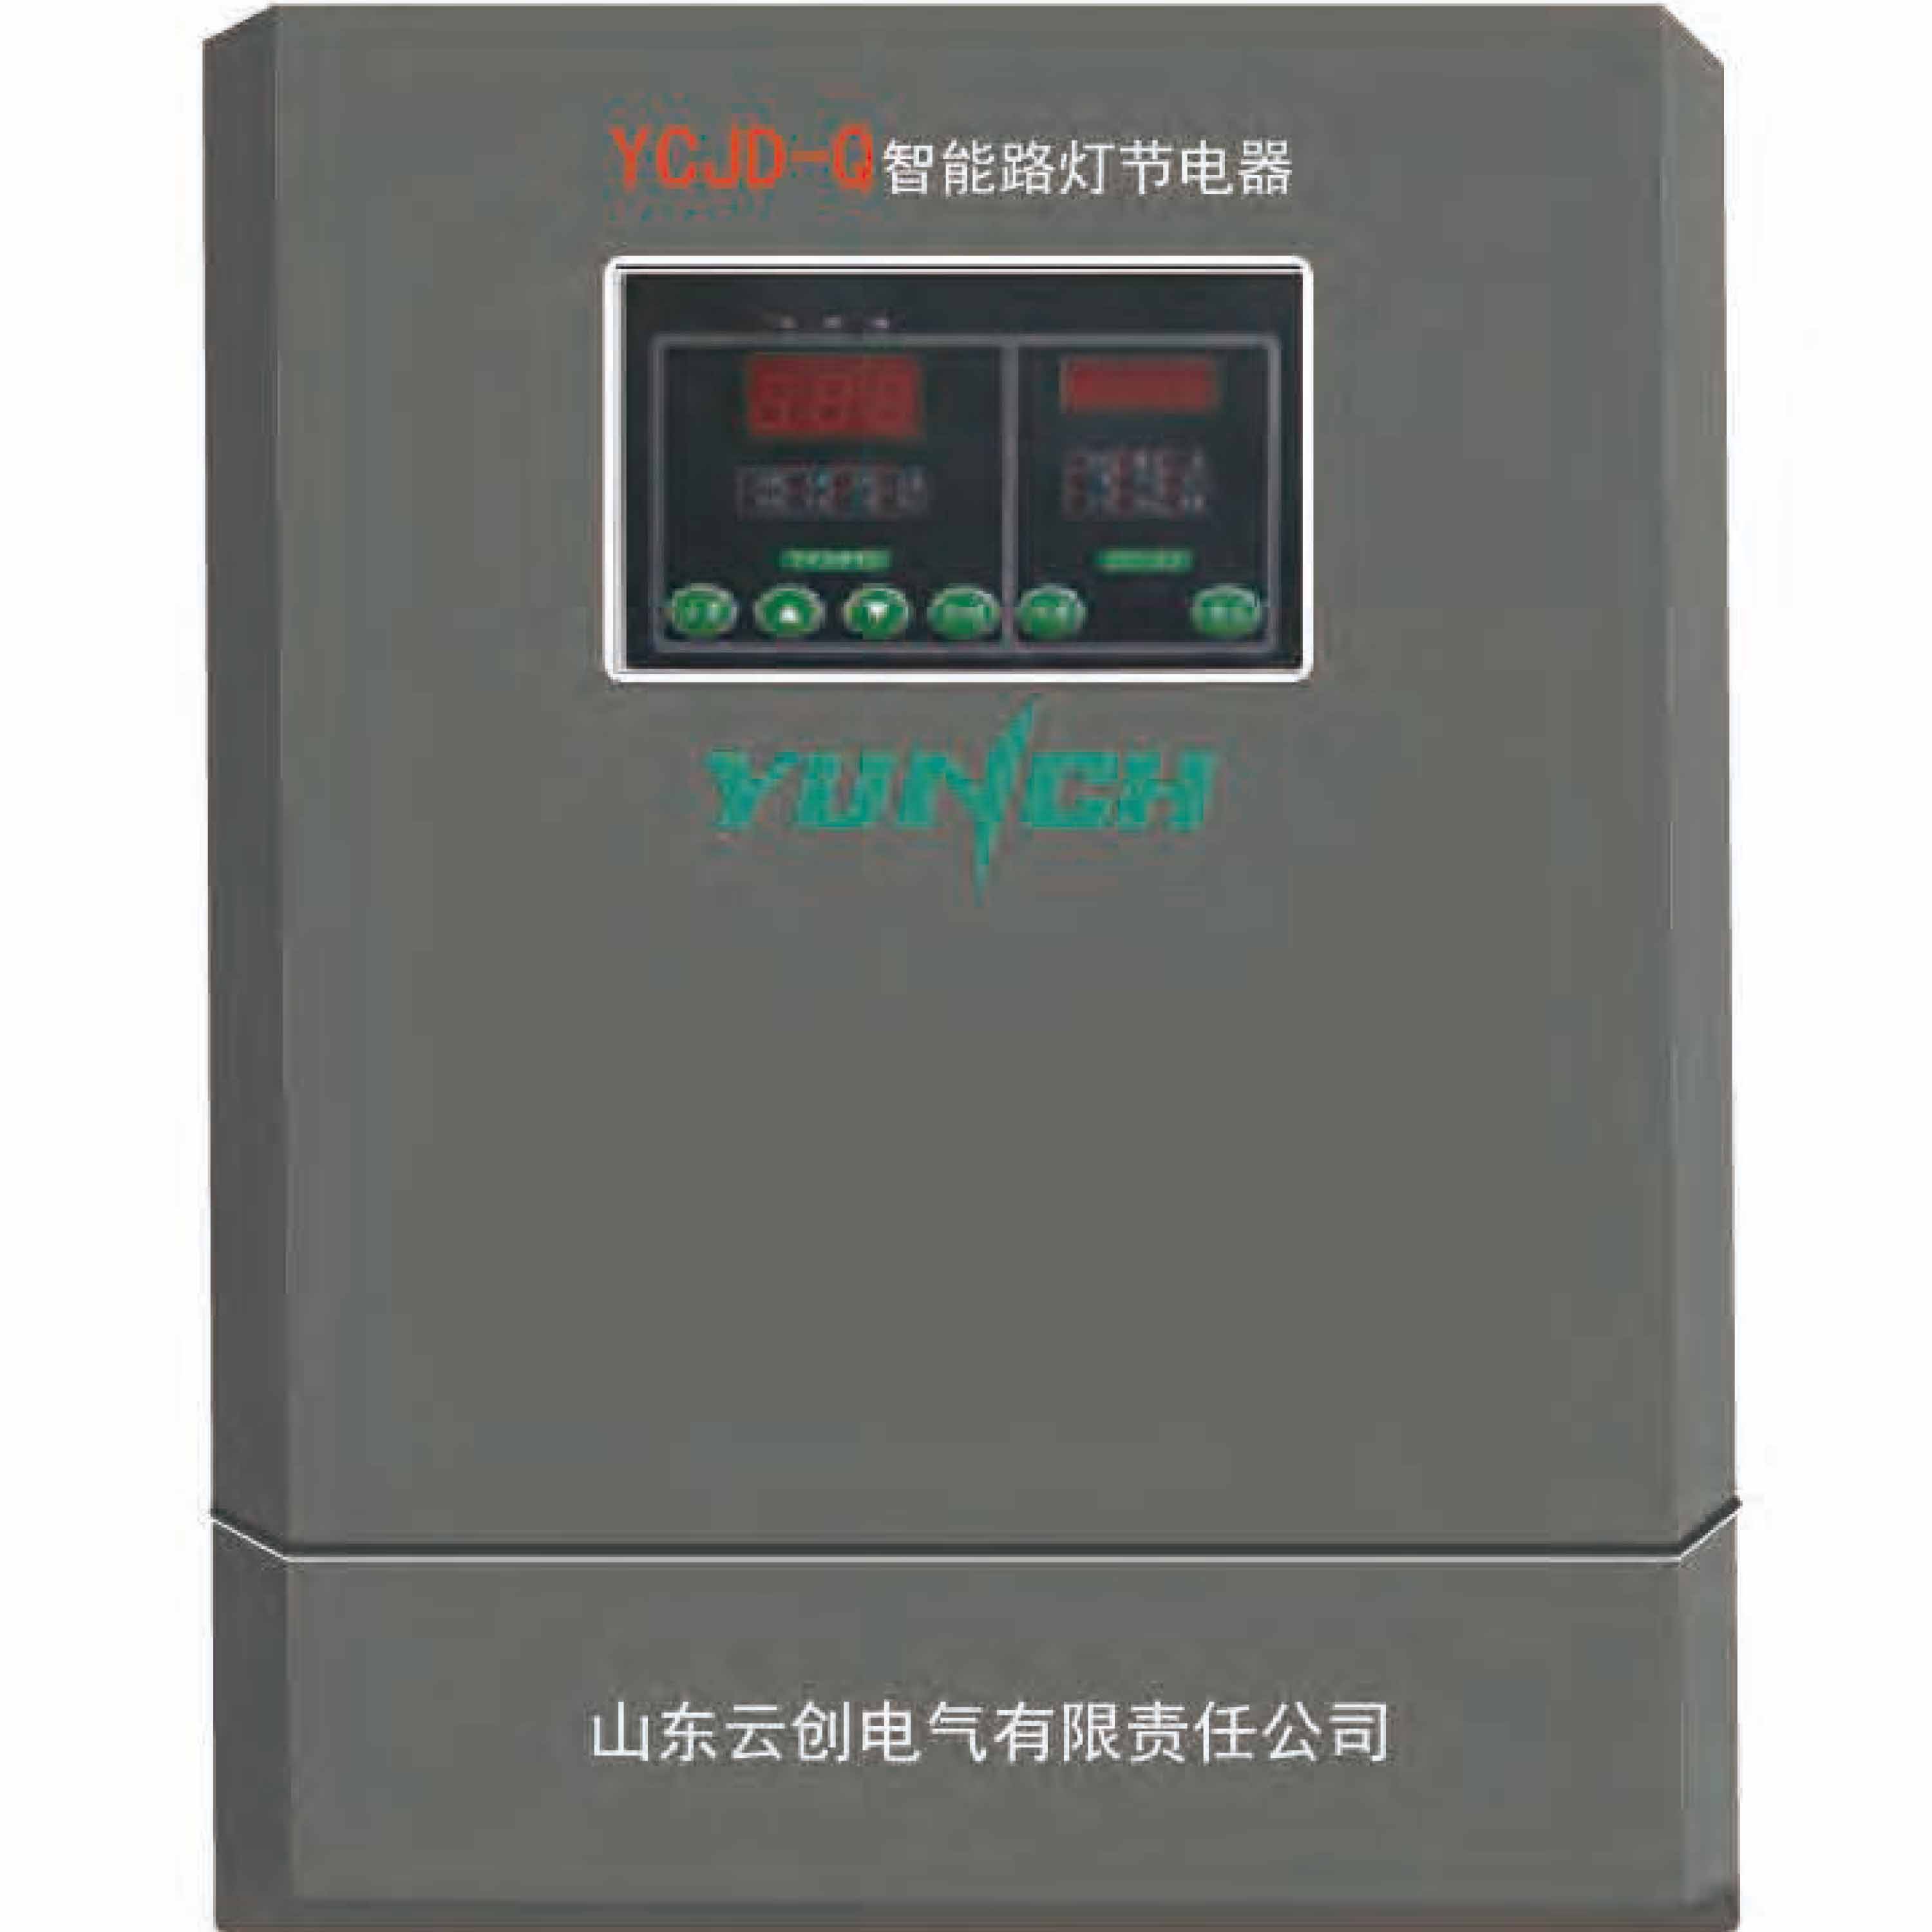 智能照明节电器（照明稳压调控装置）YCJD-Q型